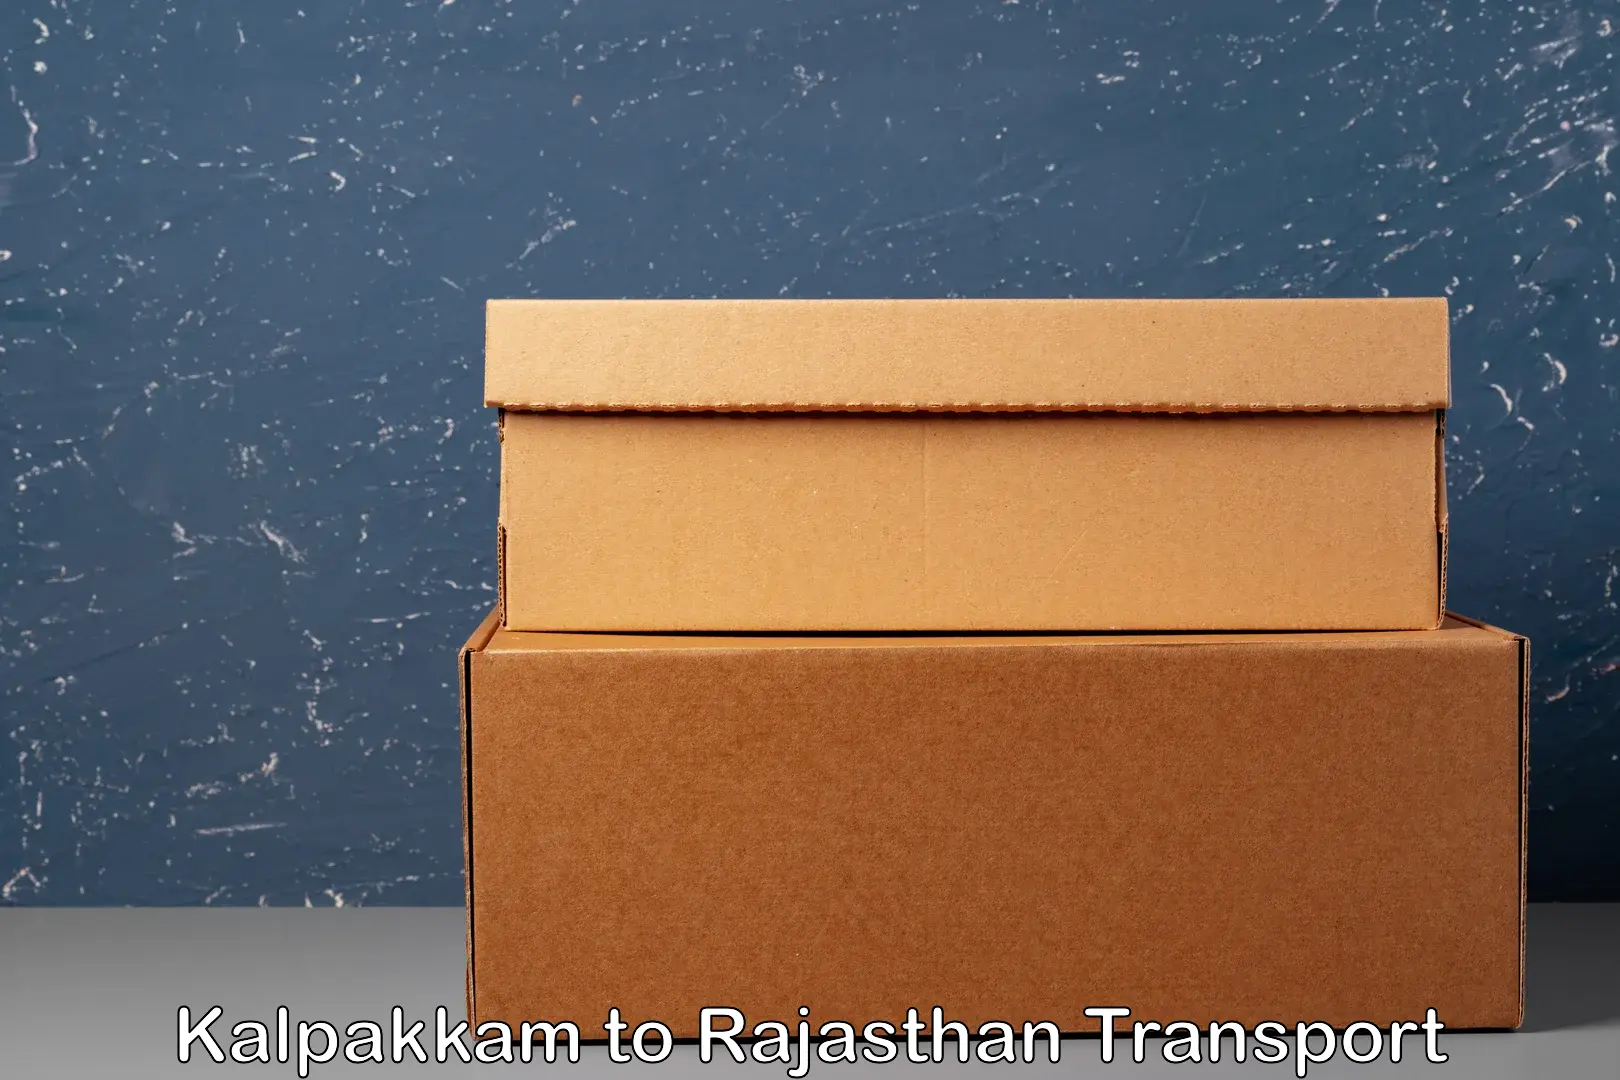 Cargo transport services in Kalpakkam to Bhilwara